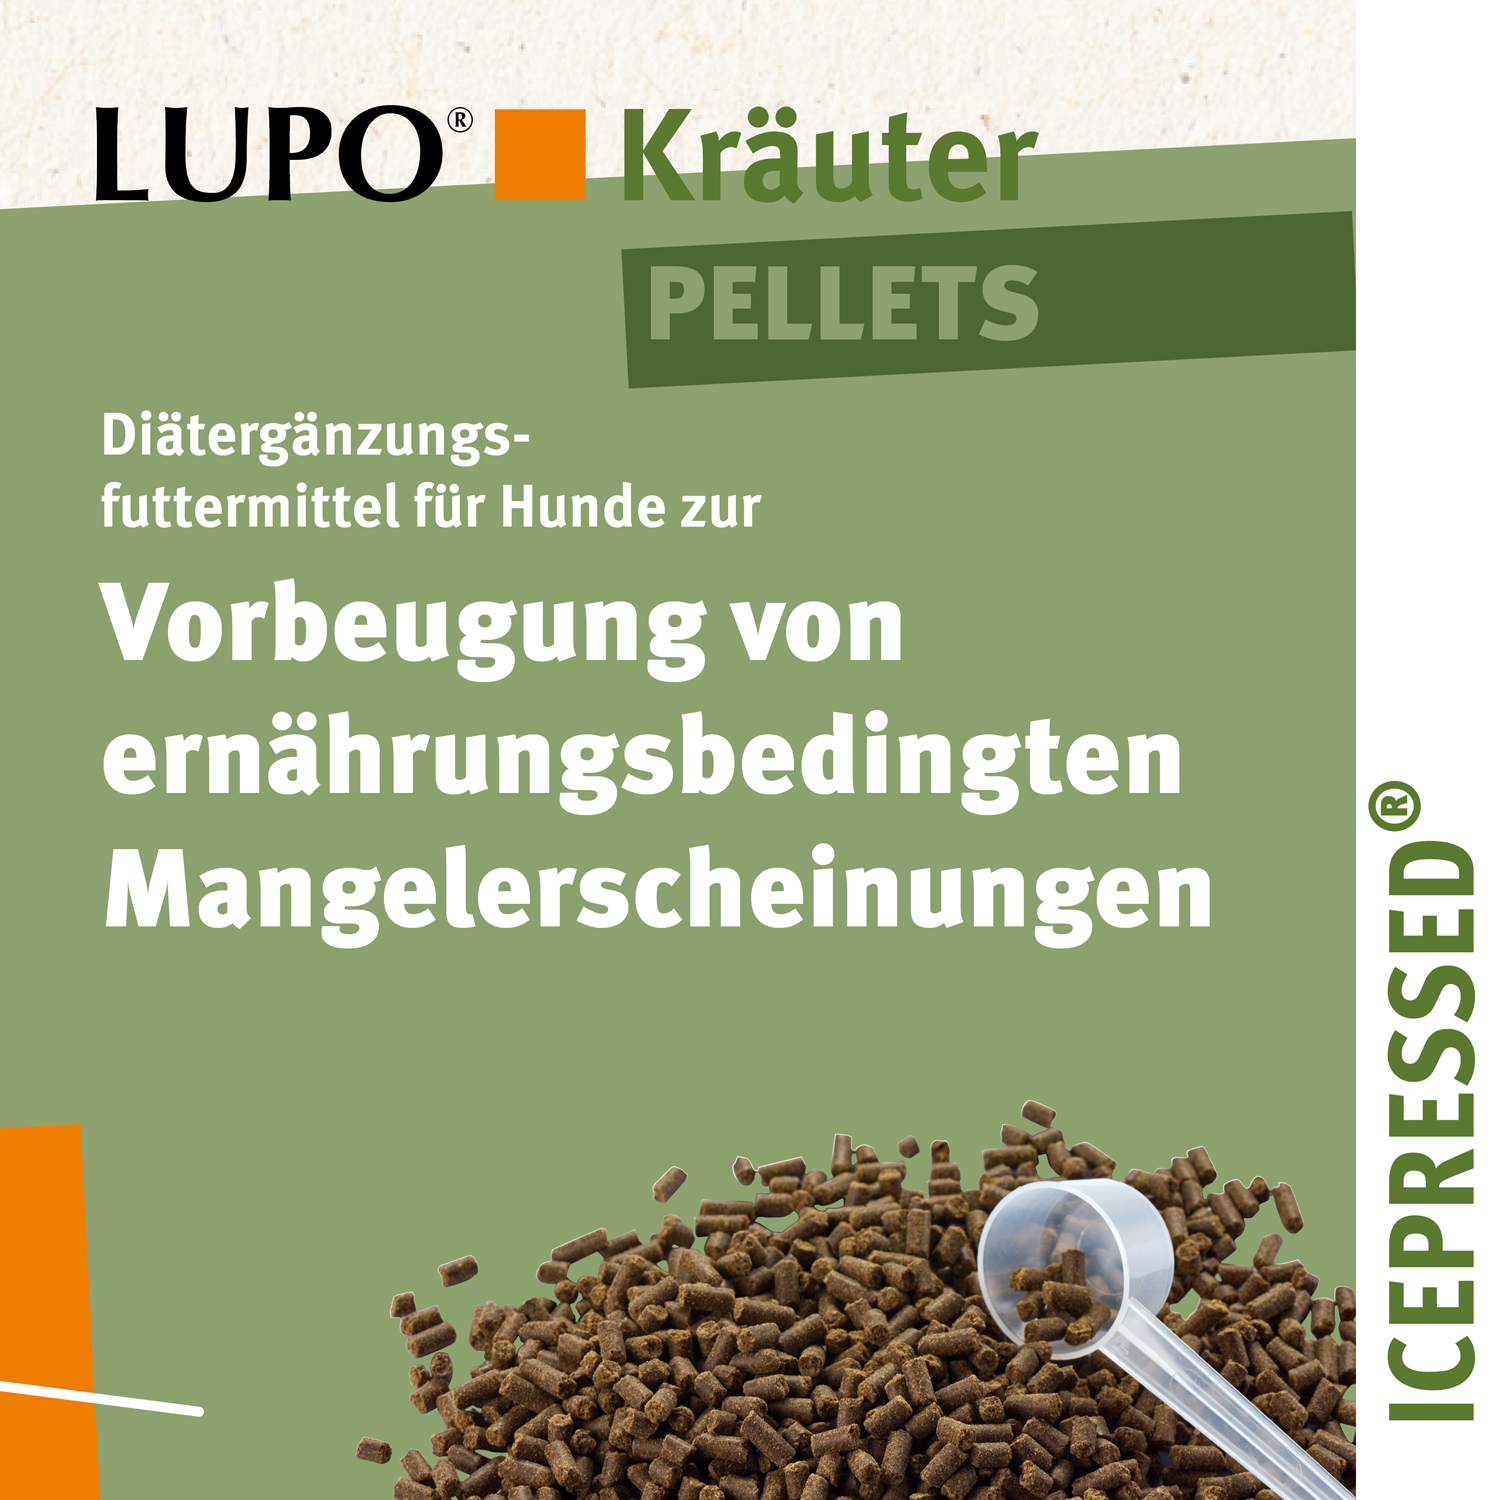 LUPO Kräuter Pellets 4000 g